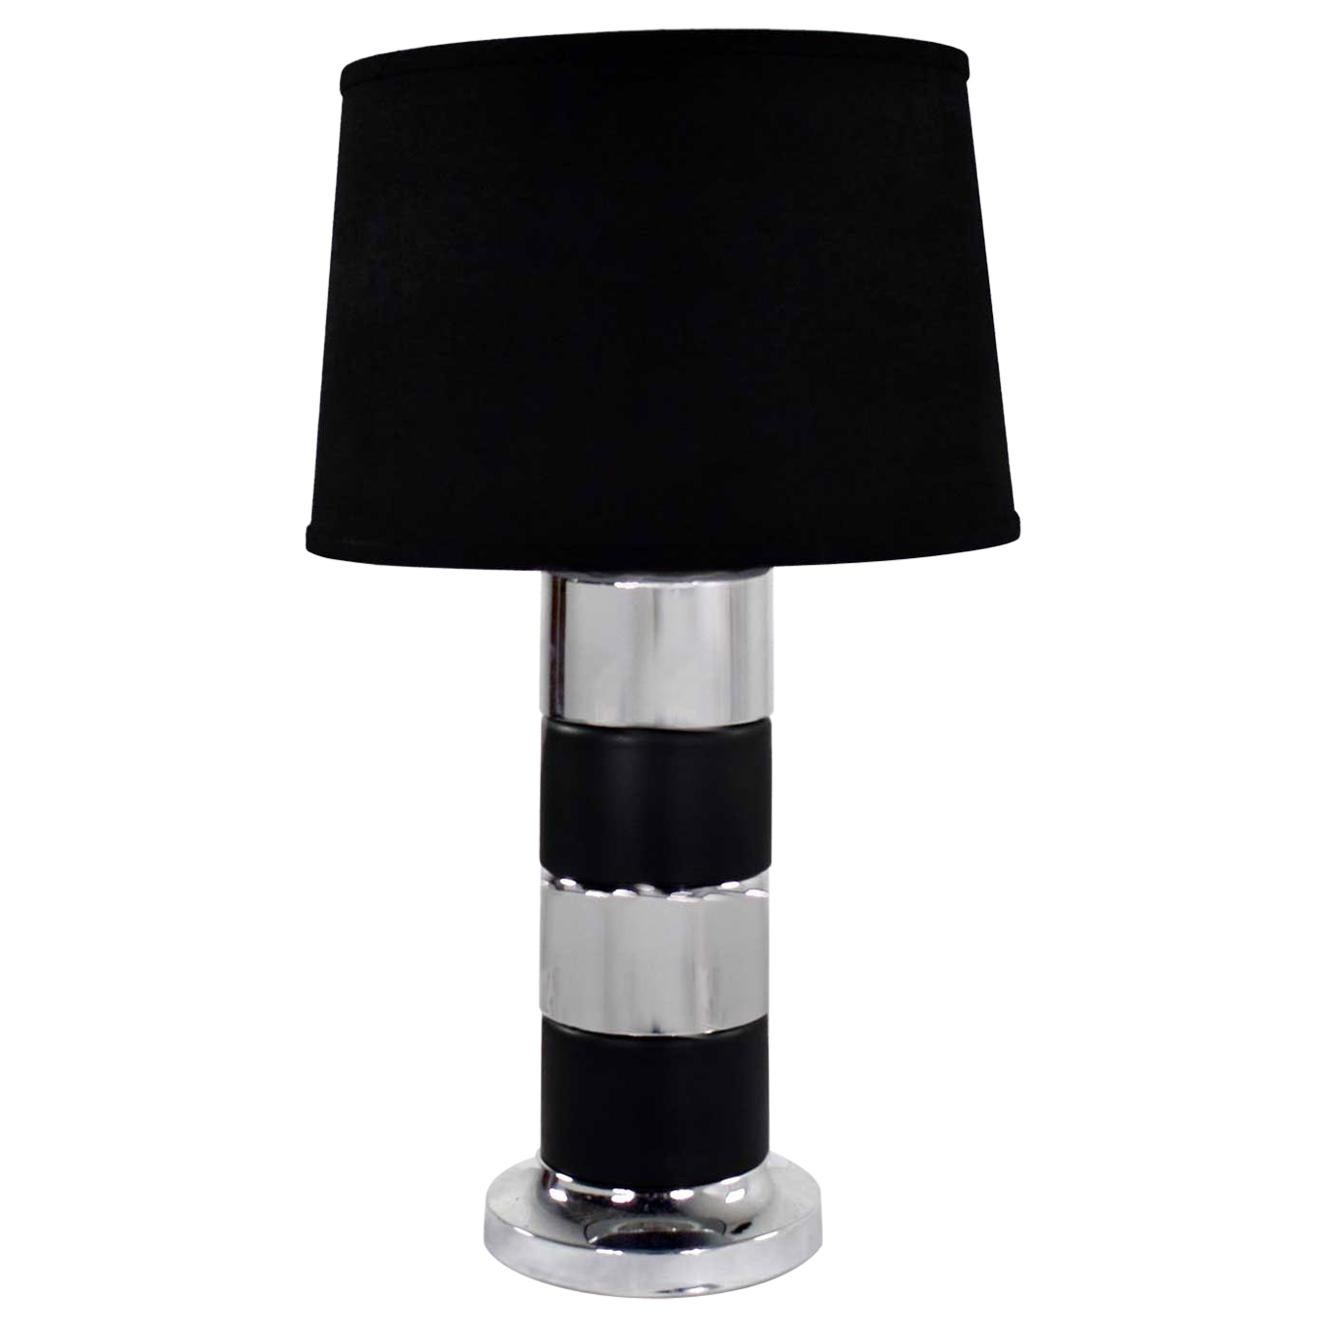 Zylindrische Vintage-Tischlampe im Art-déco-Stil, Chrom & Schwarz, horizontale Streifen, schwarz 